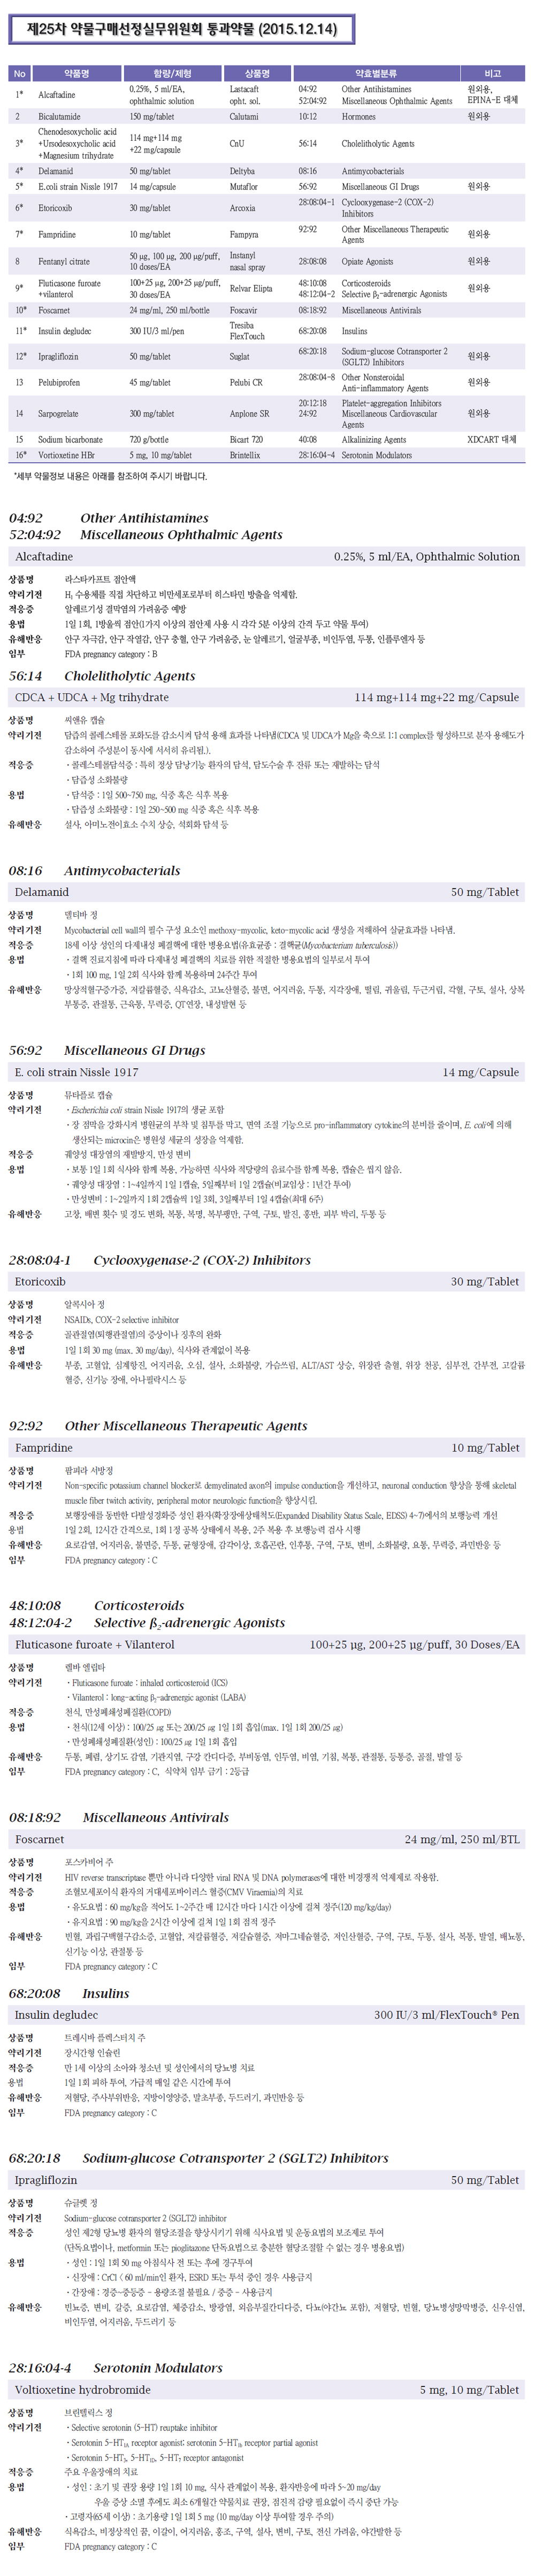 제 25차 약물구매정실무위원회 통과약물(2015.12.14)